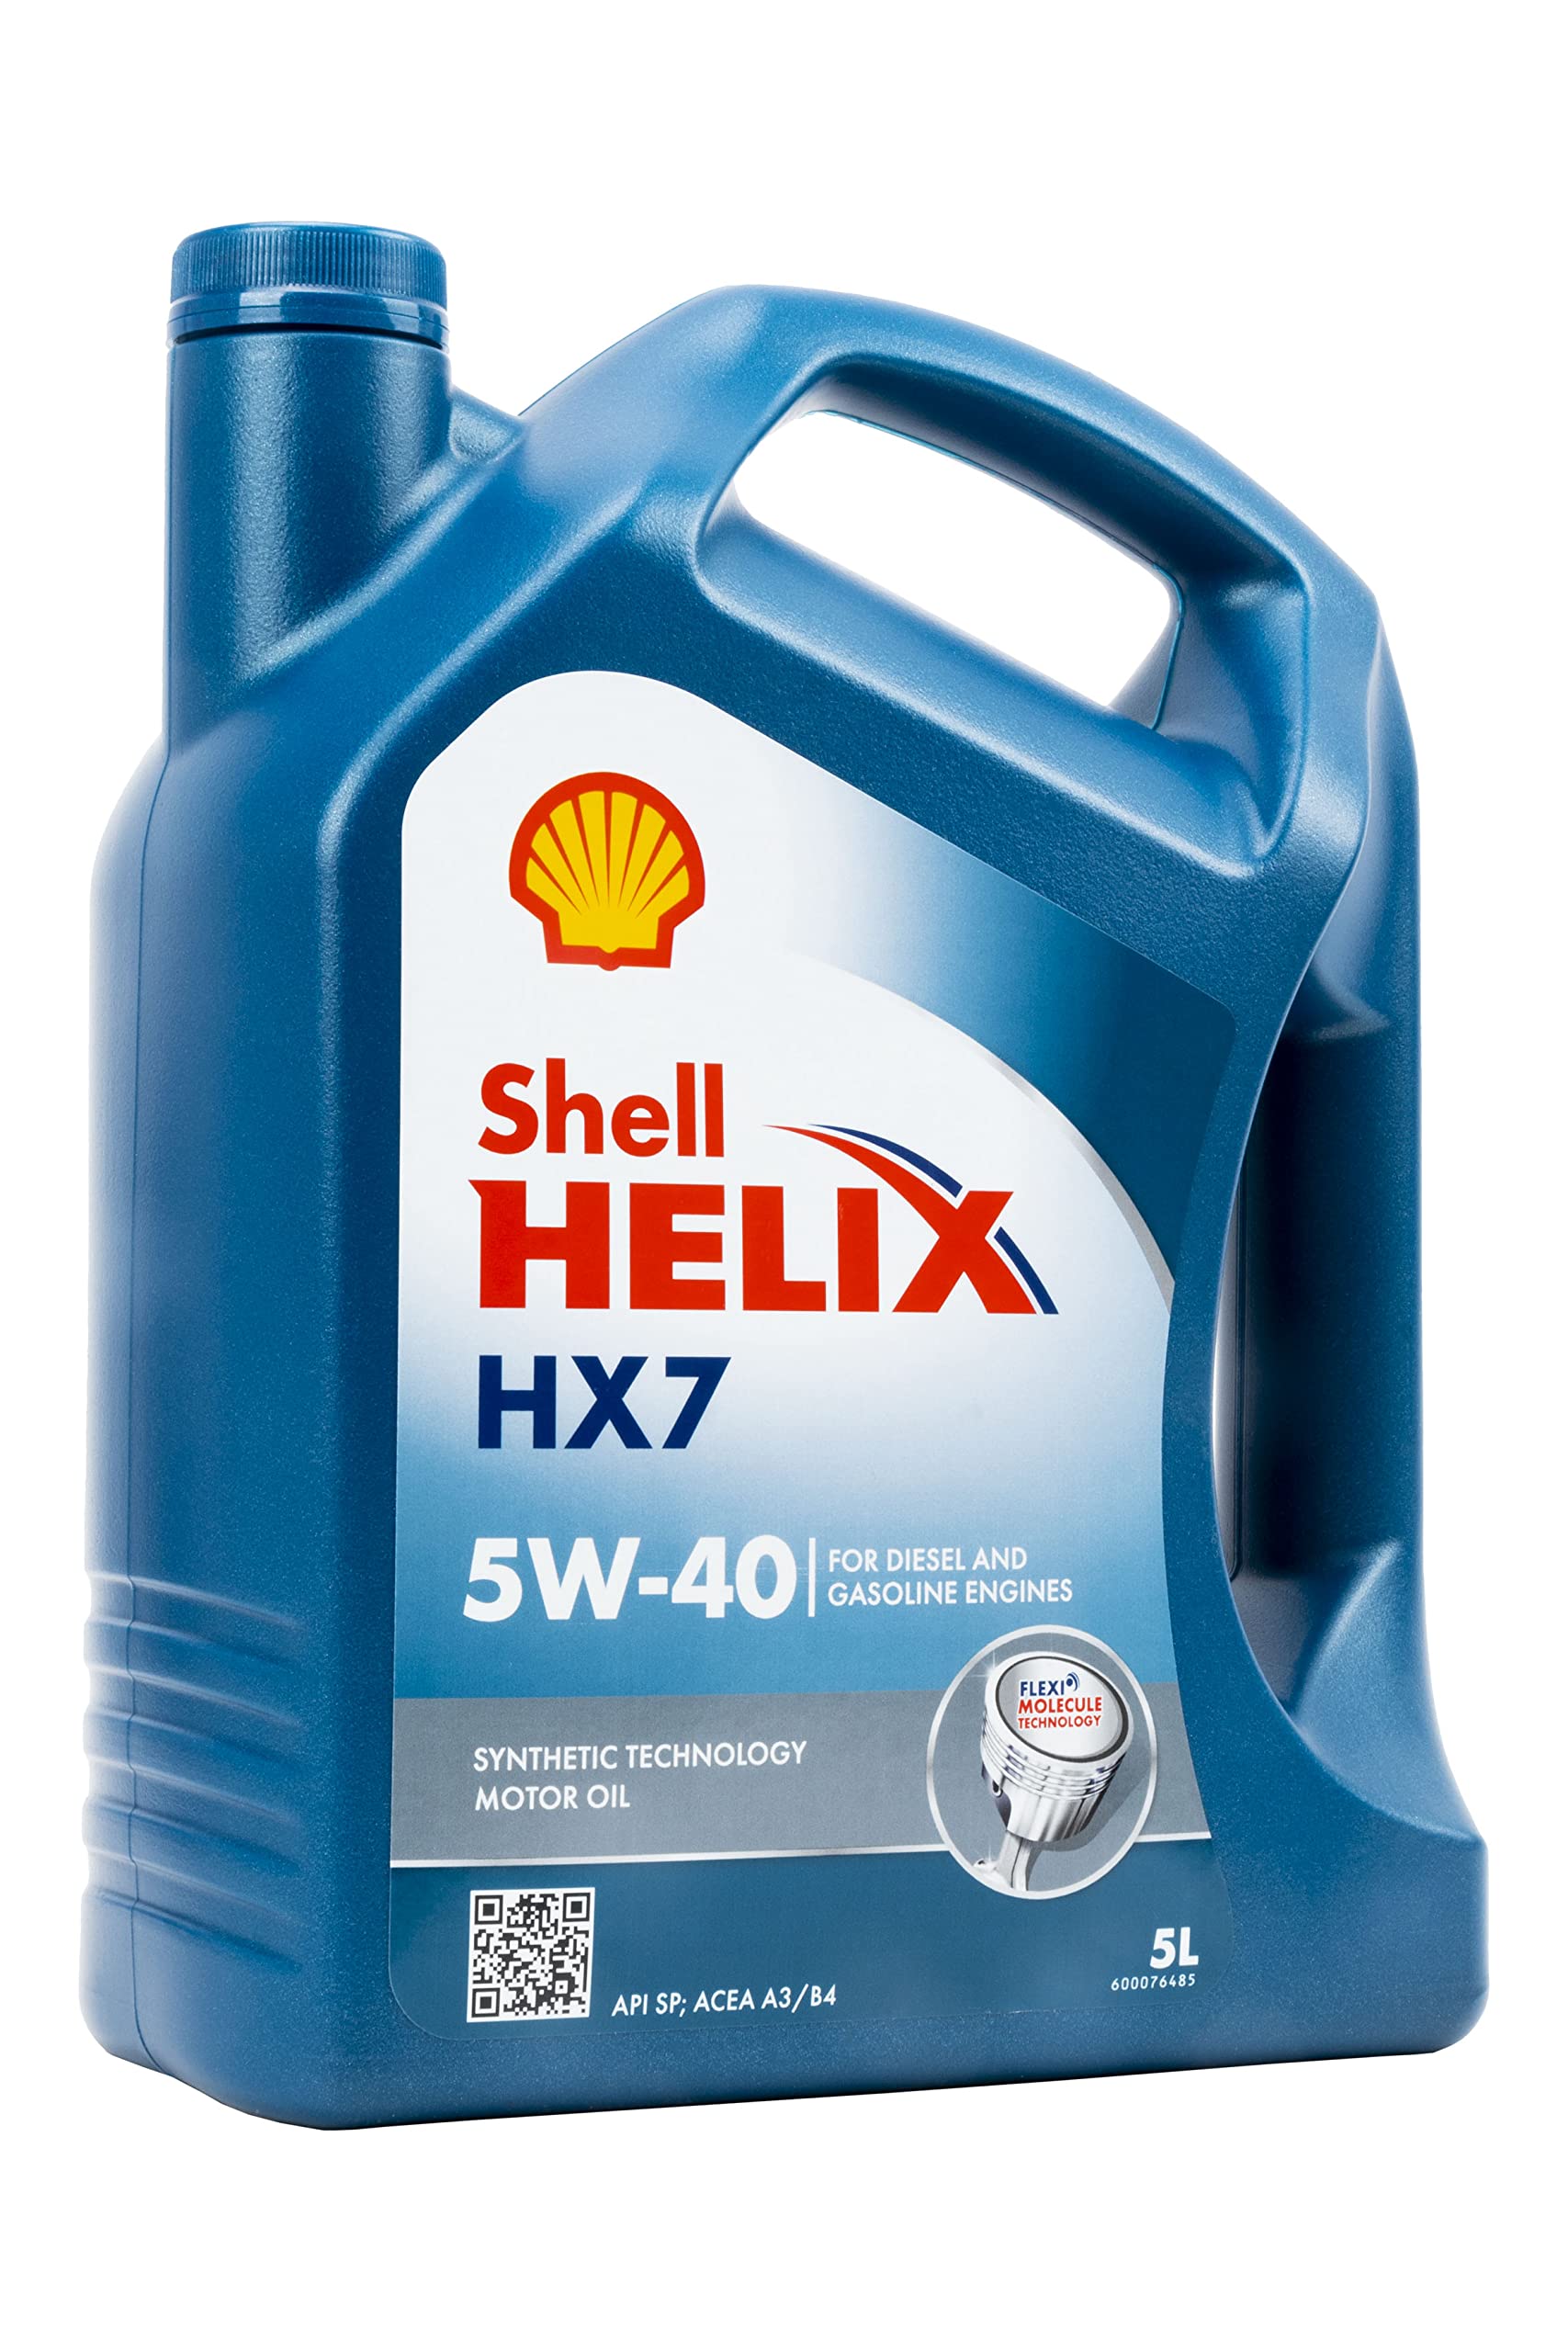 ‎Shell Helix HX7 5W-40 5 Liter Motoröl von Shell